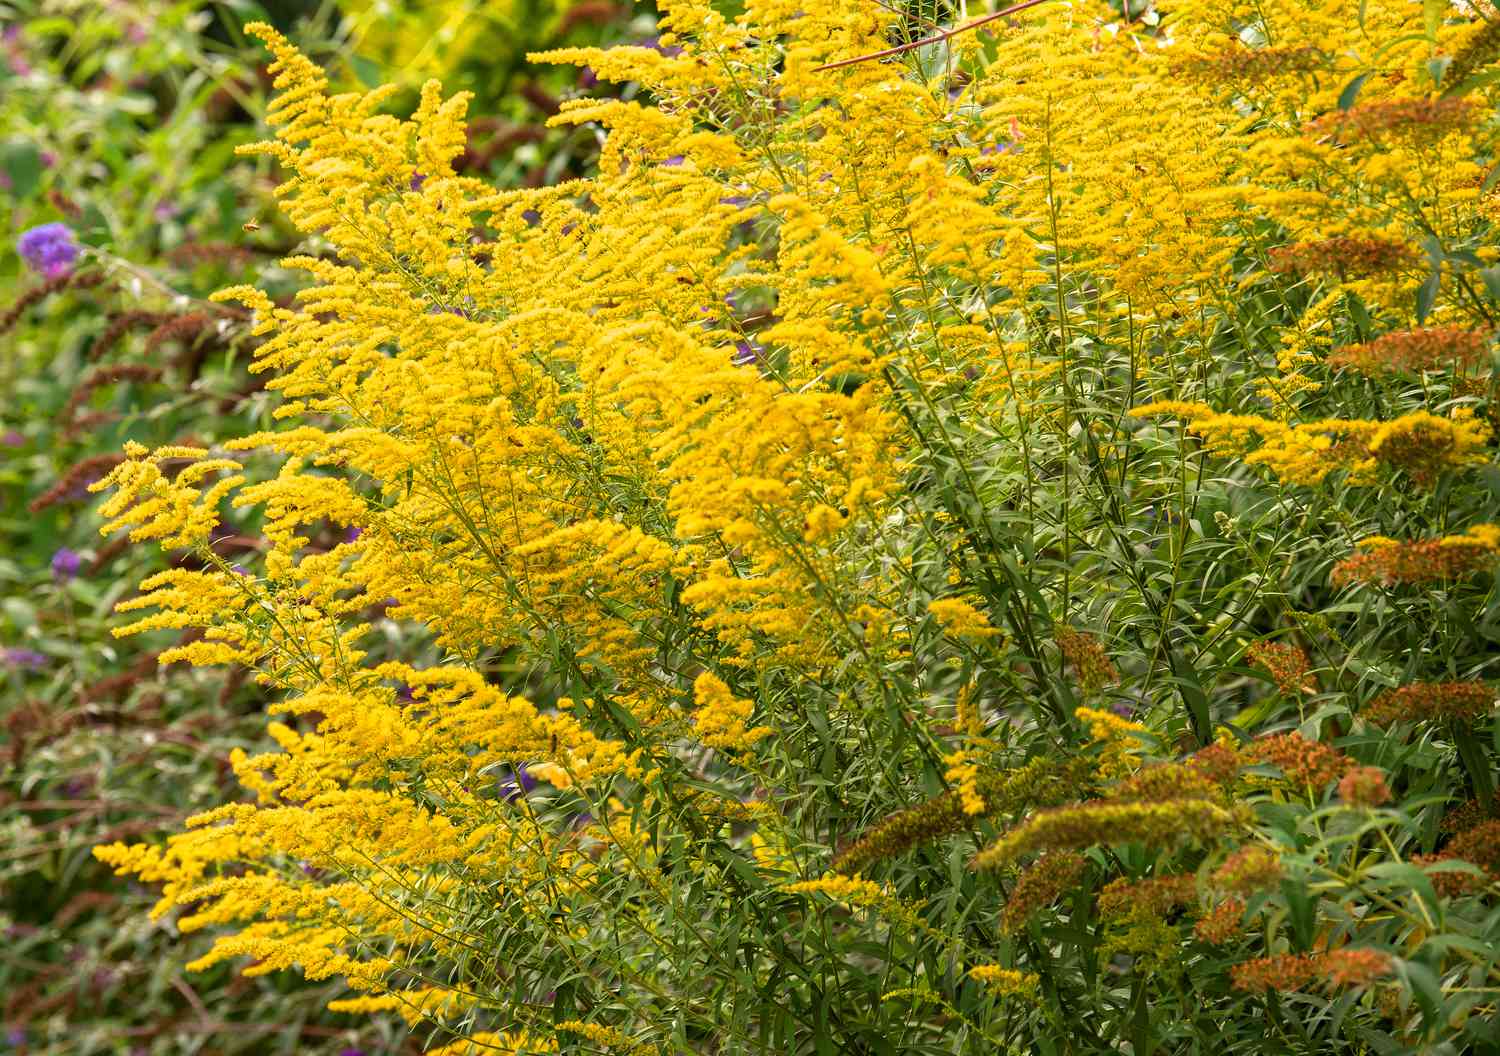 Goldrutenpflanze mit gelben Blütenrispen an hohen Stängeln